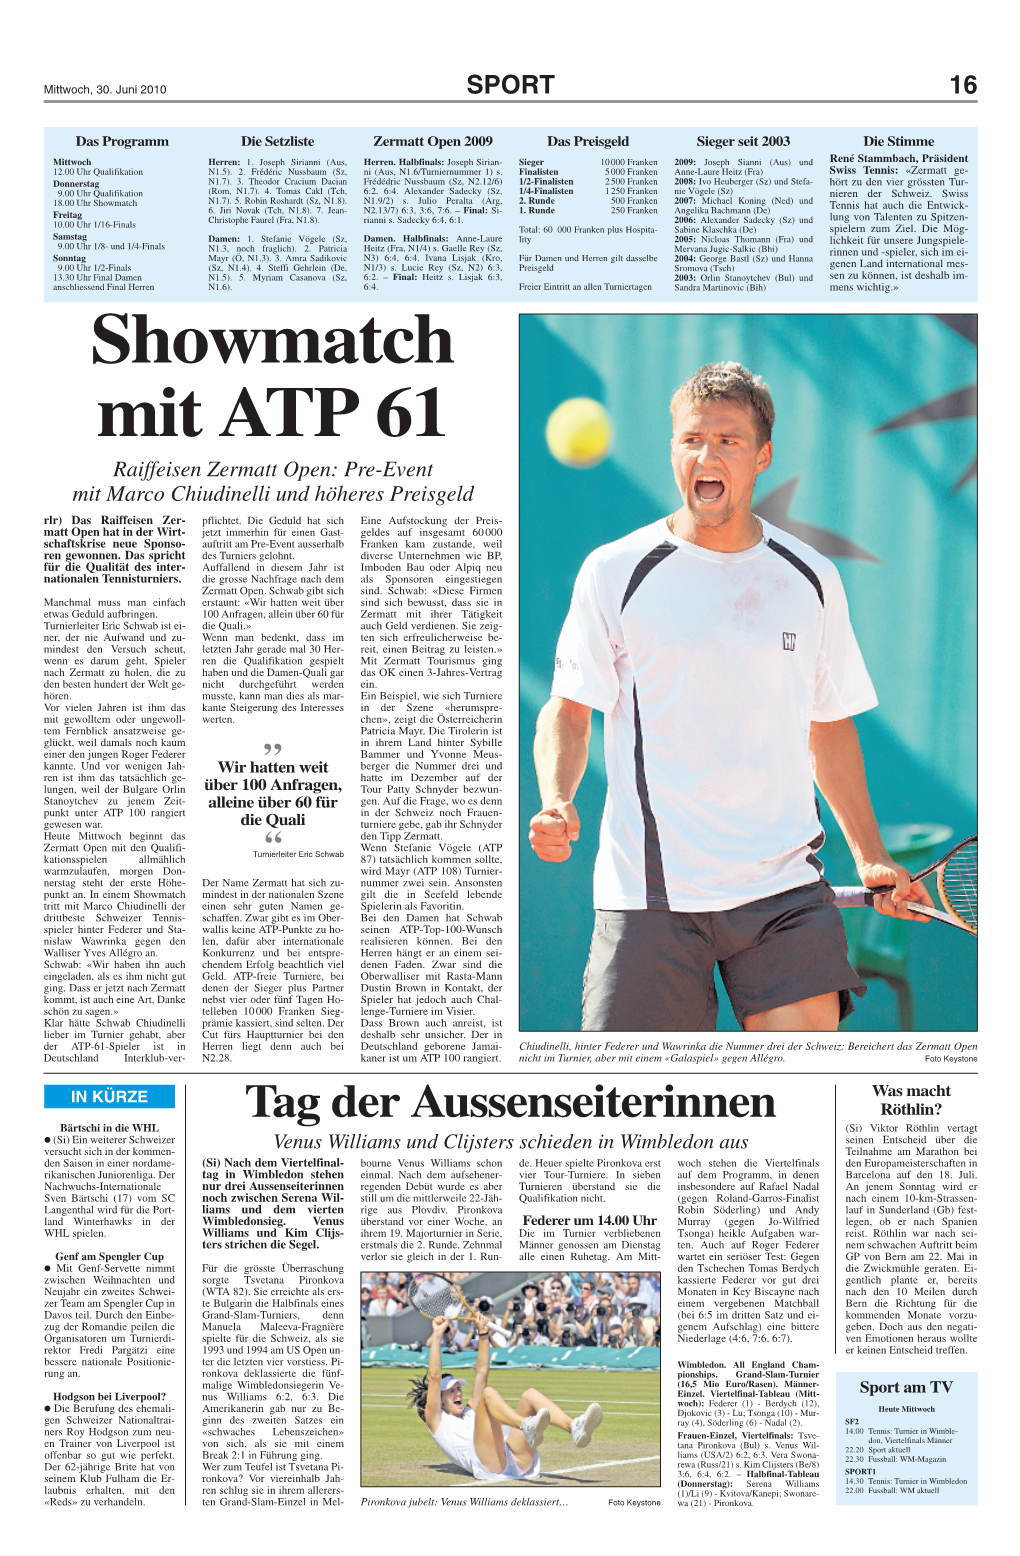 Showmatch Mit ATP 61 Raiffeisen Zermatt Open: Pre-Event Mit Marco Chiudinelli Und Höheres Preisgeld Rlr) Das Raiffeisen Zer- Pflichtet